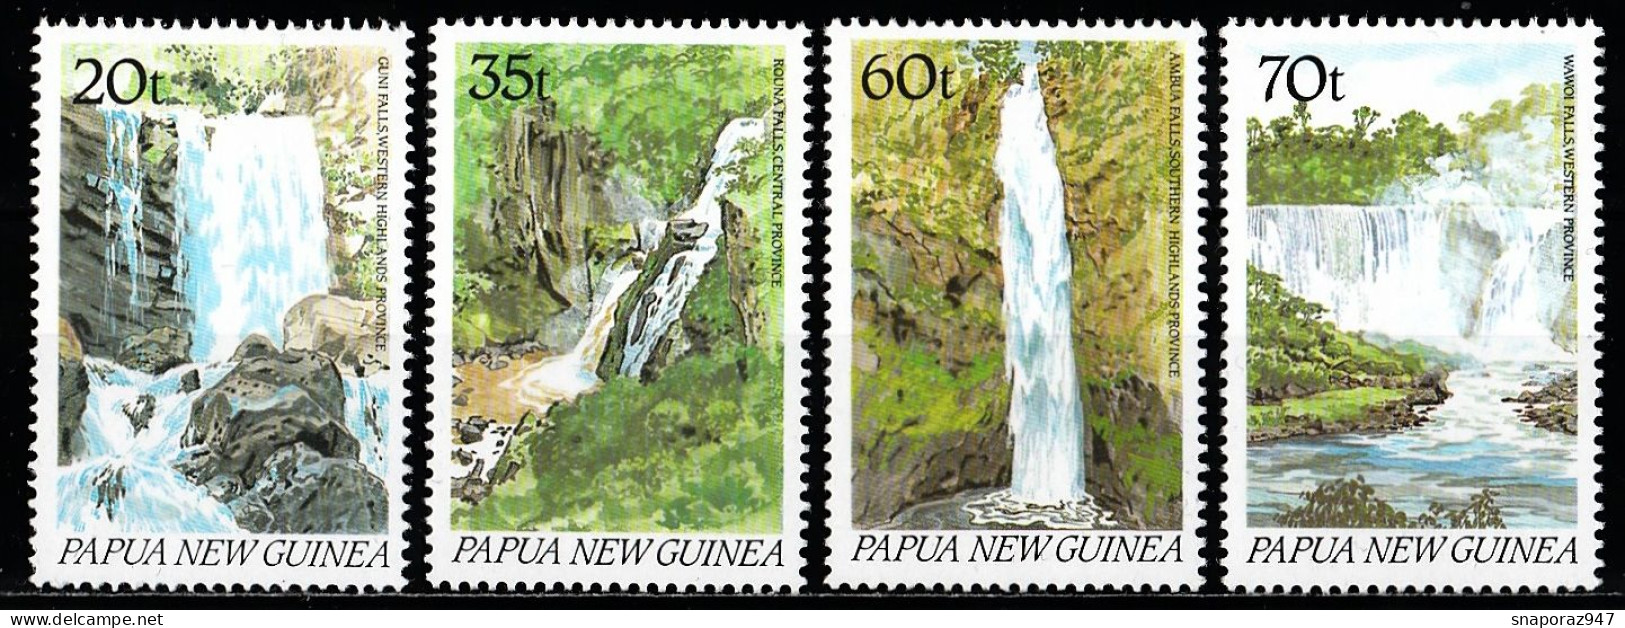 1990 Papua New Guinea Waterfalls Guni,Rouna,Ambua,Wawoi Set MNH** Tr129 - Geographie